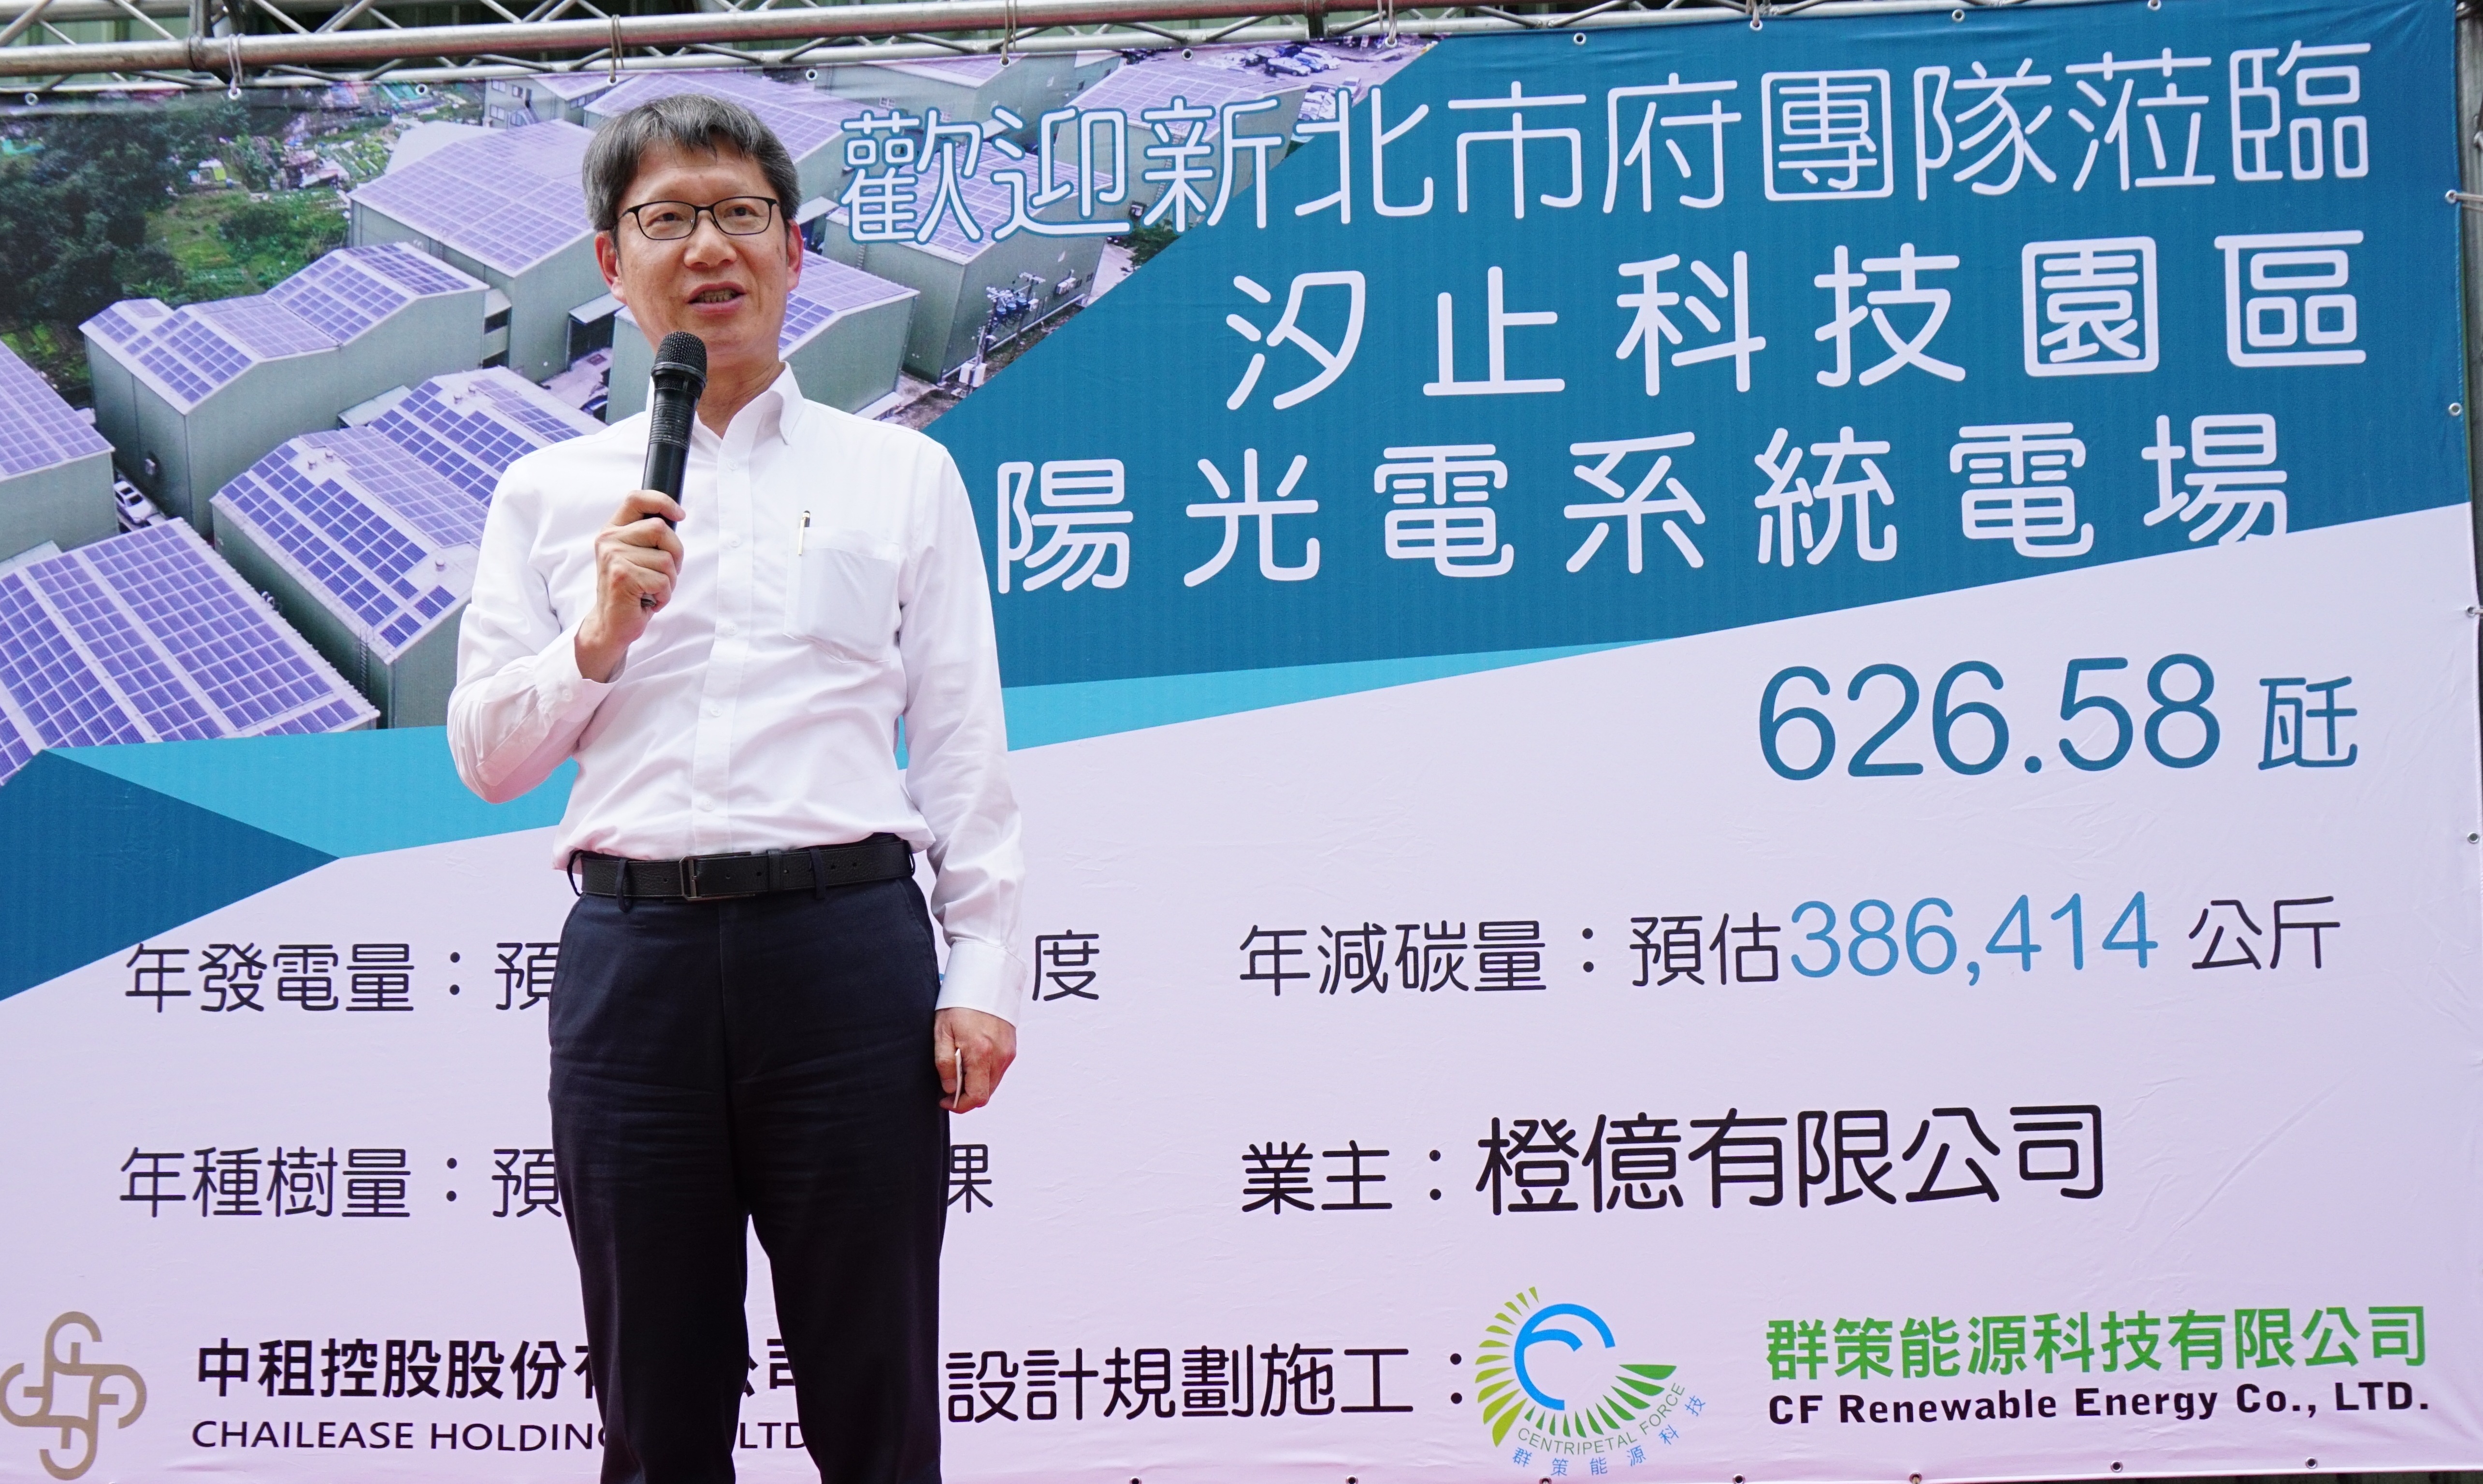 新北市副市長葉惠青於今(19)日參訪橙億企業，期能將工廠成功設置太陽光電系統的經驗推廣至境內其他地區